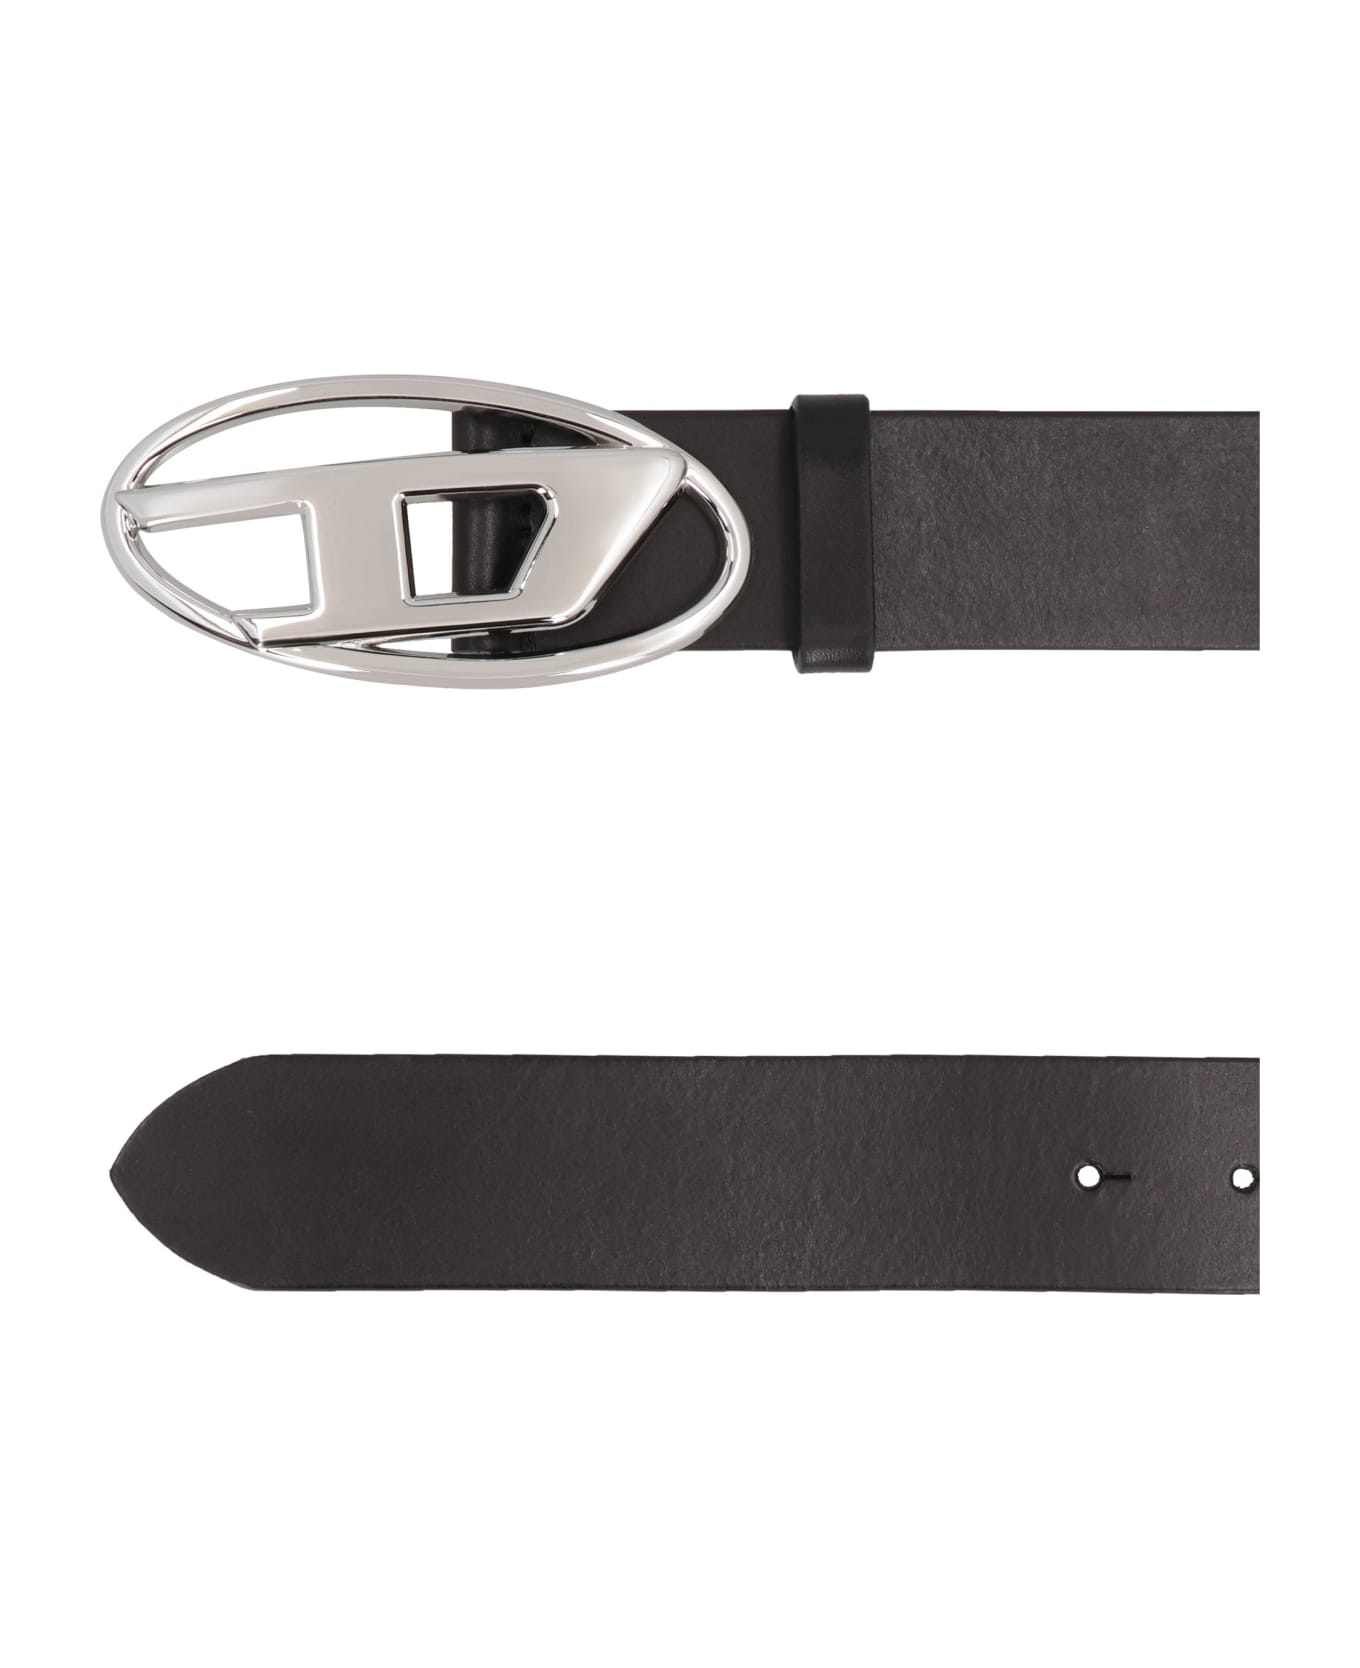 Diesel B-1dr Leather Belt - black name:456